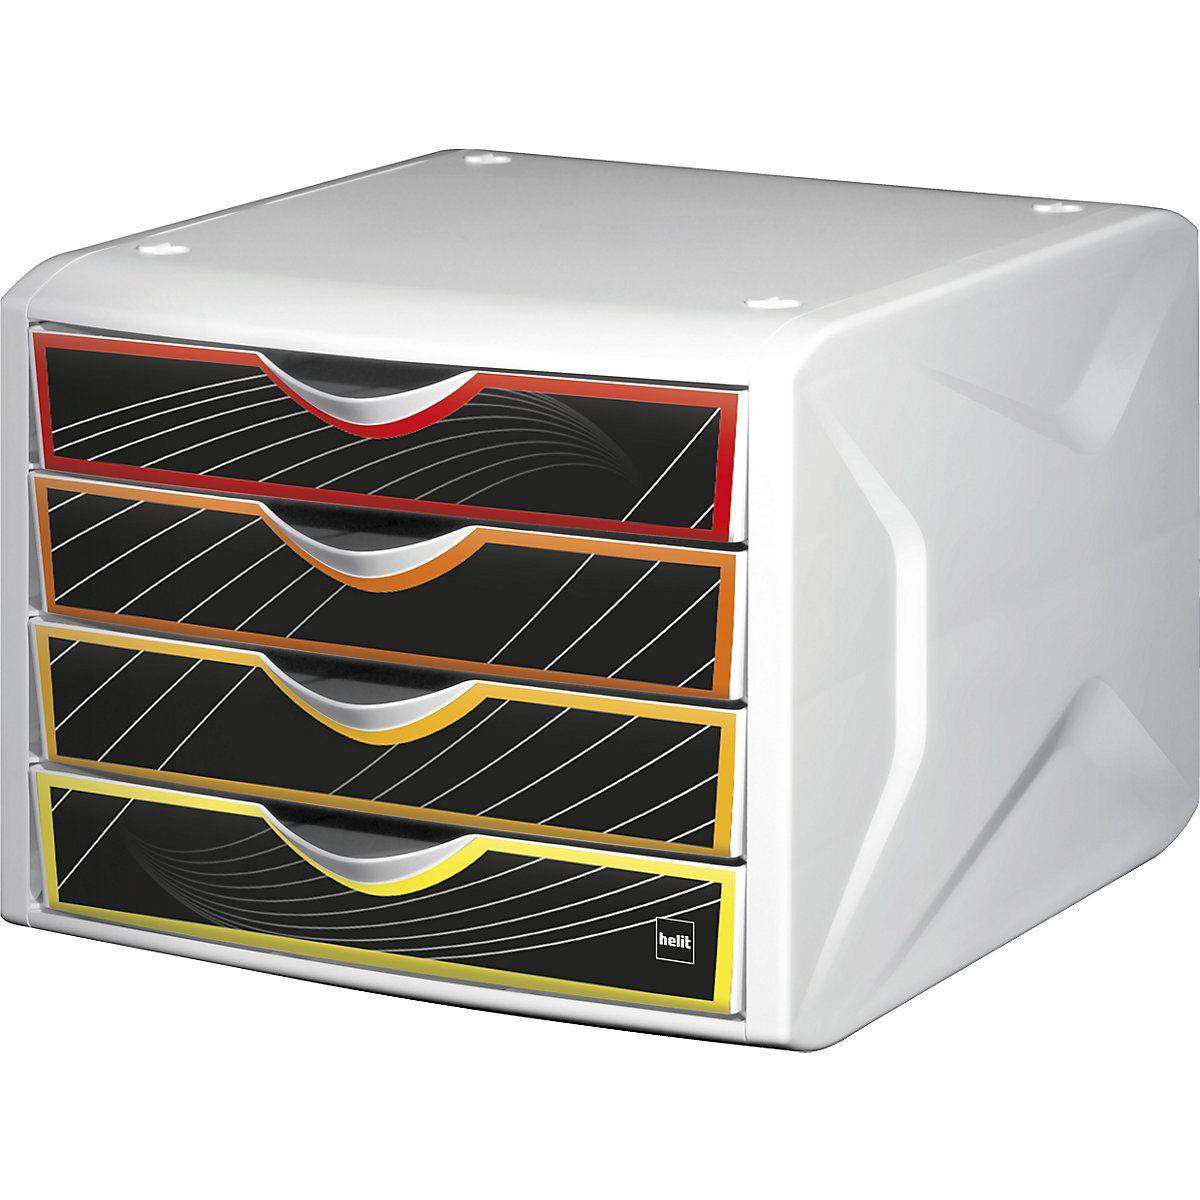 Ladebox – helit, h x b x d = 212 x 262 x 330 mm, VE = 5 stuks, ontwerp laden priority-1